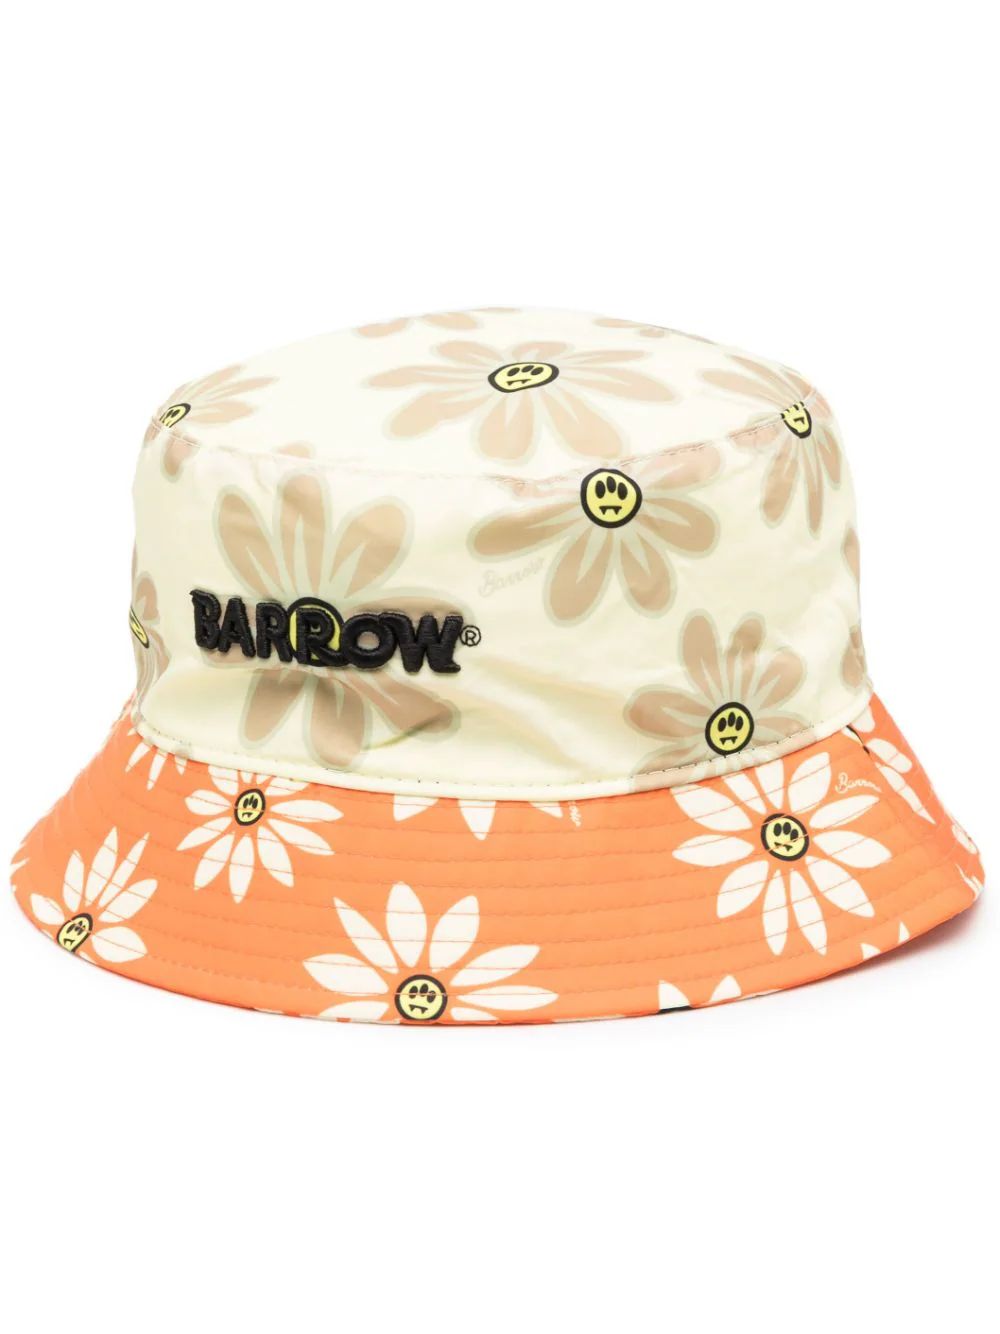 BARROW floral-print logo-embroidered Bucket Hat - Farfetch | Farfetch Global